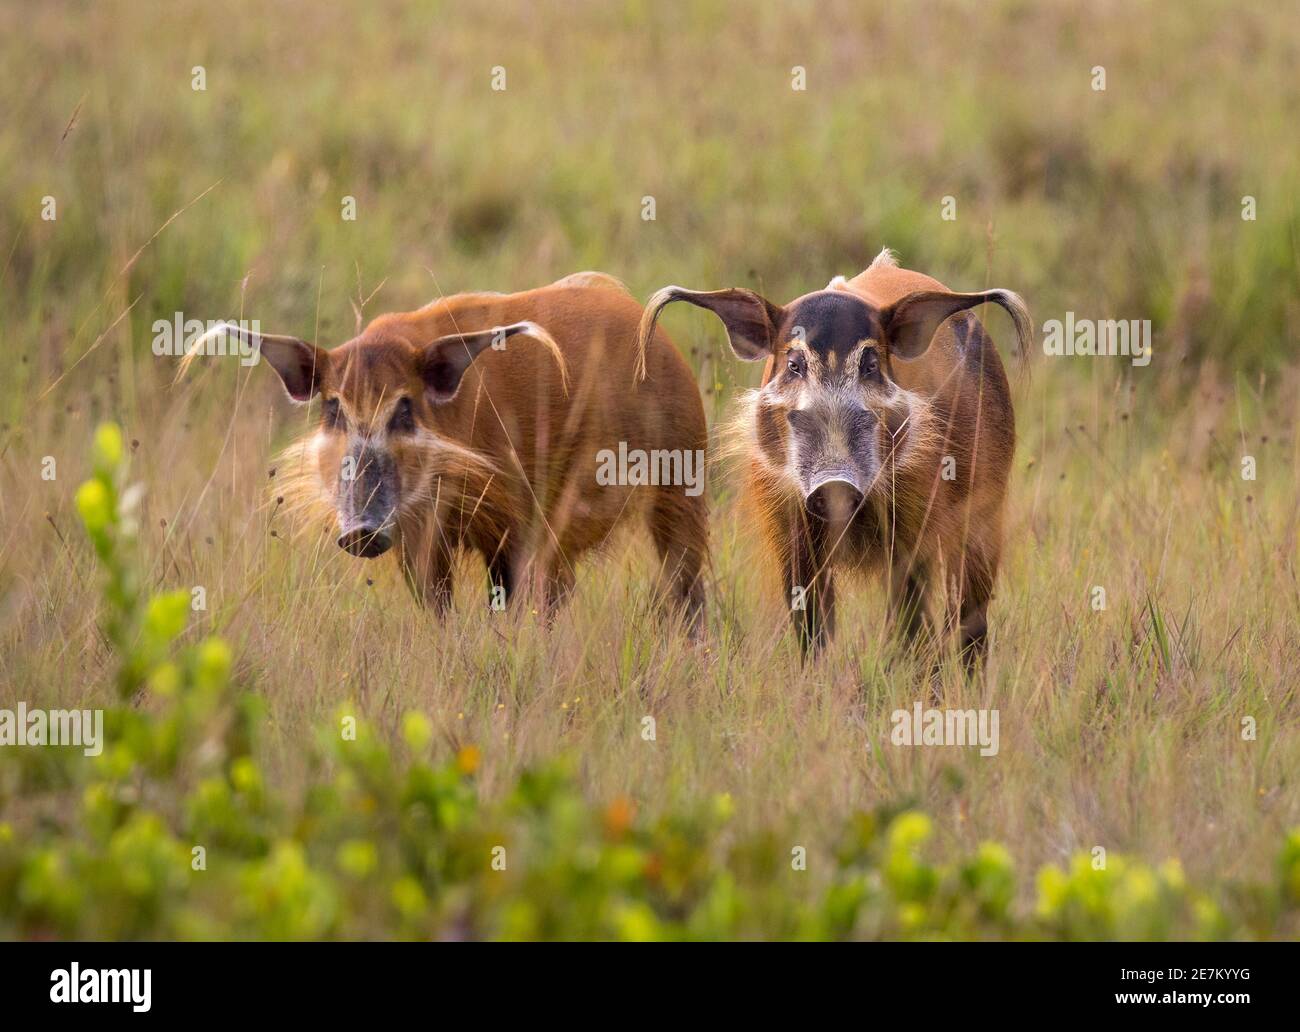 Red River Hog (Potamochoerus porcus), hembra a la izquierda, macho a la derecha, Parque Nacional Loango, Gabón, África central. Foto de stock